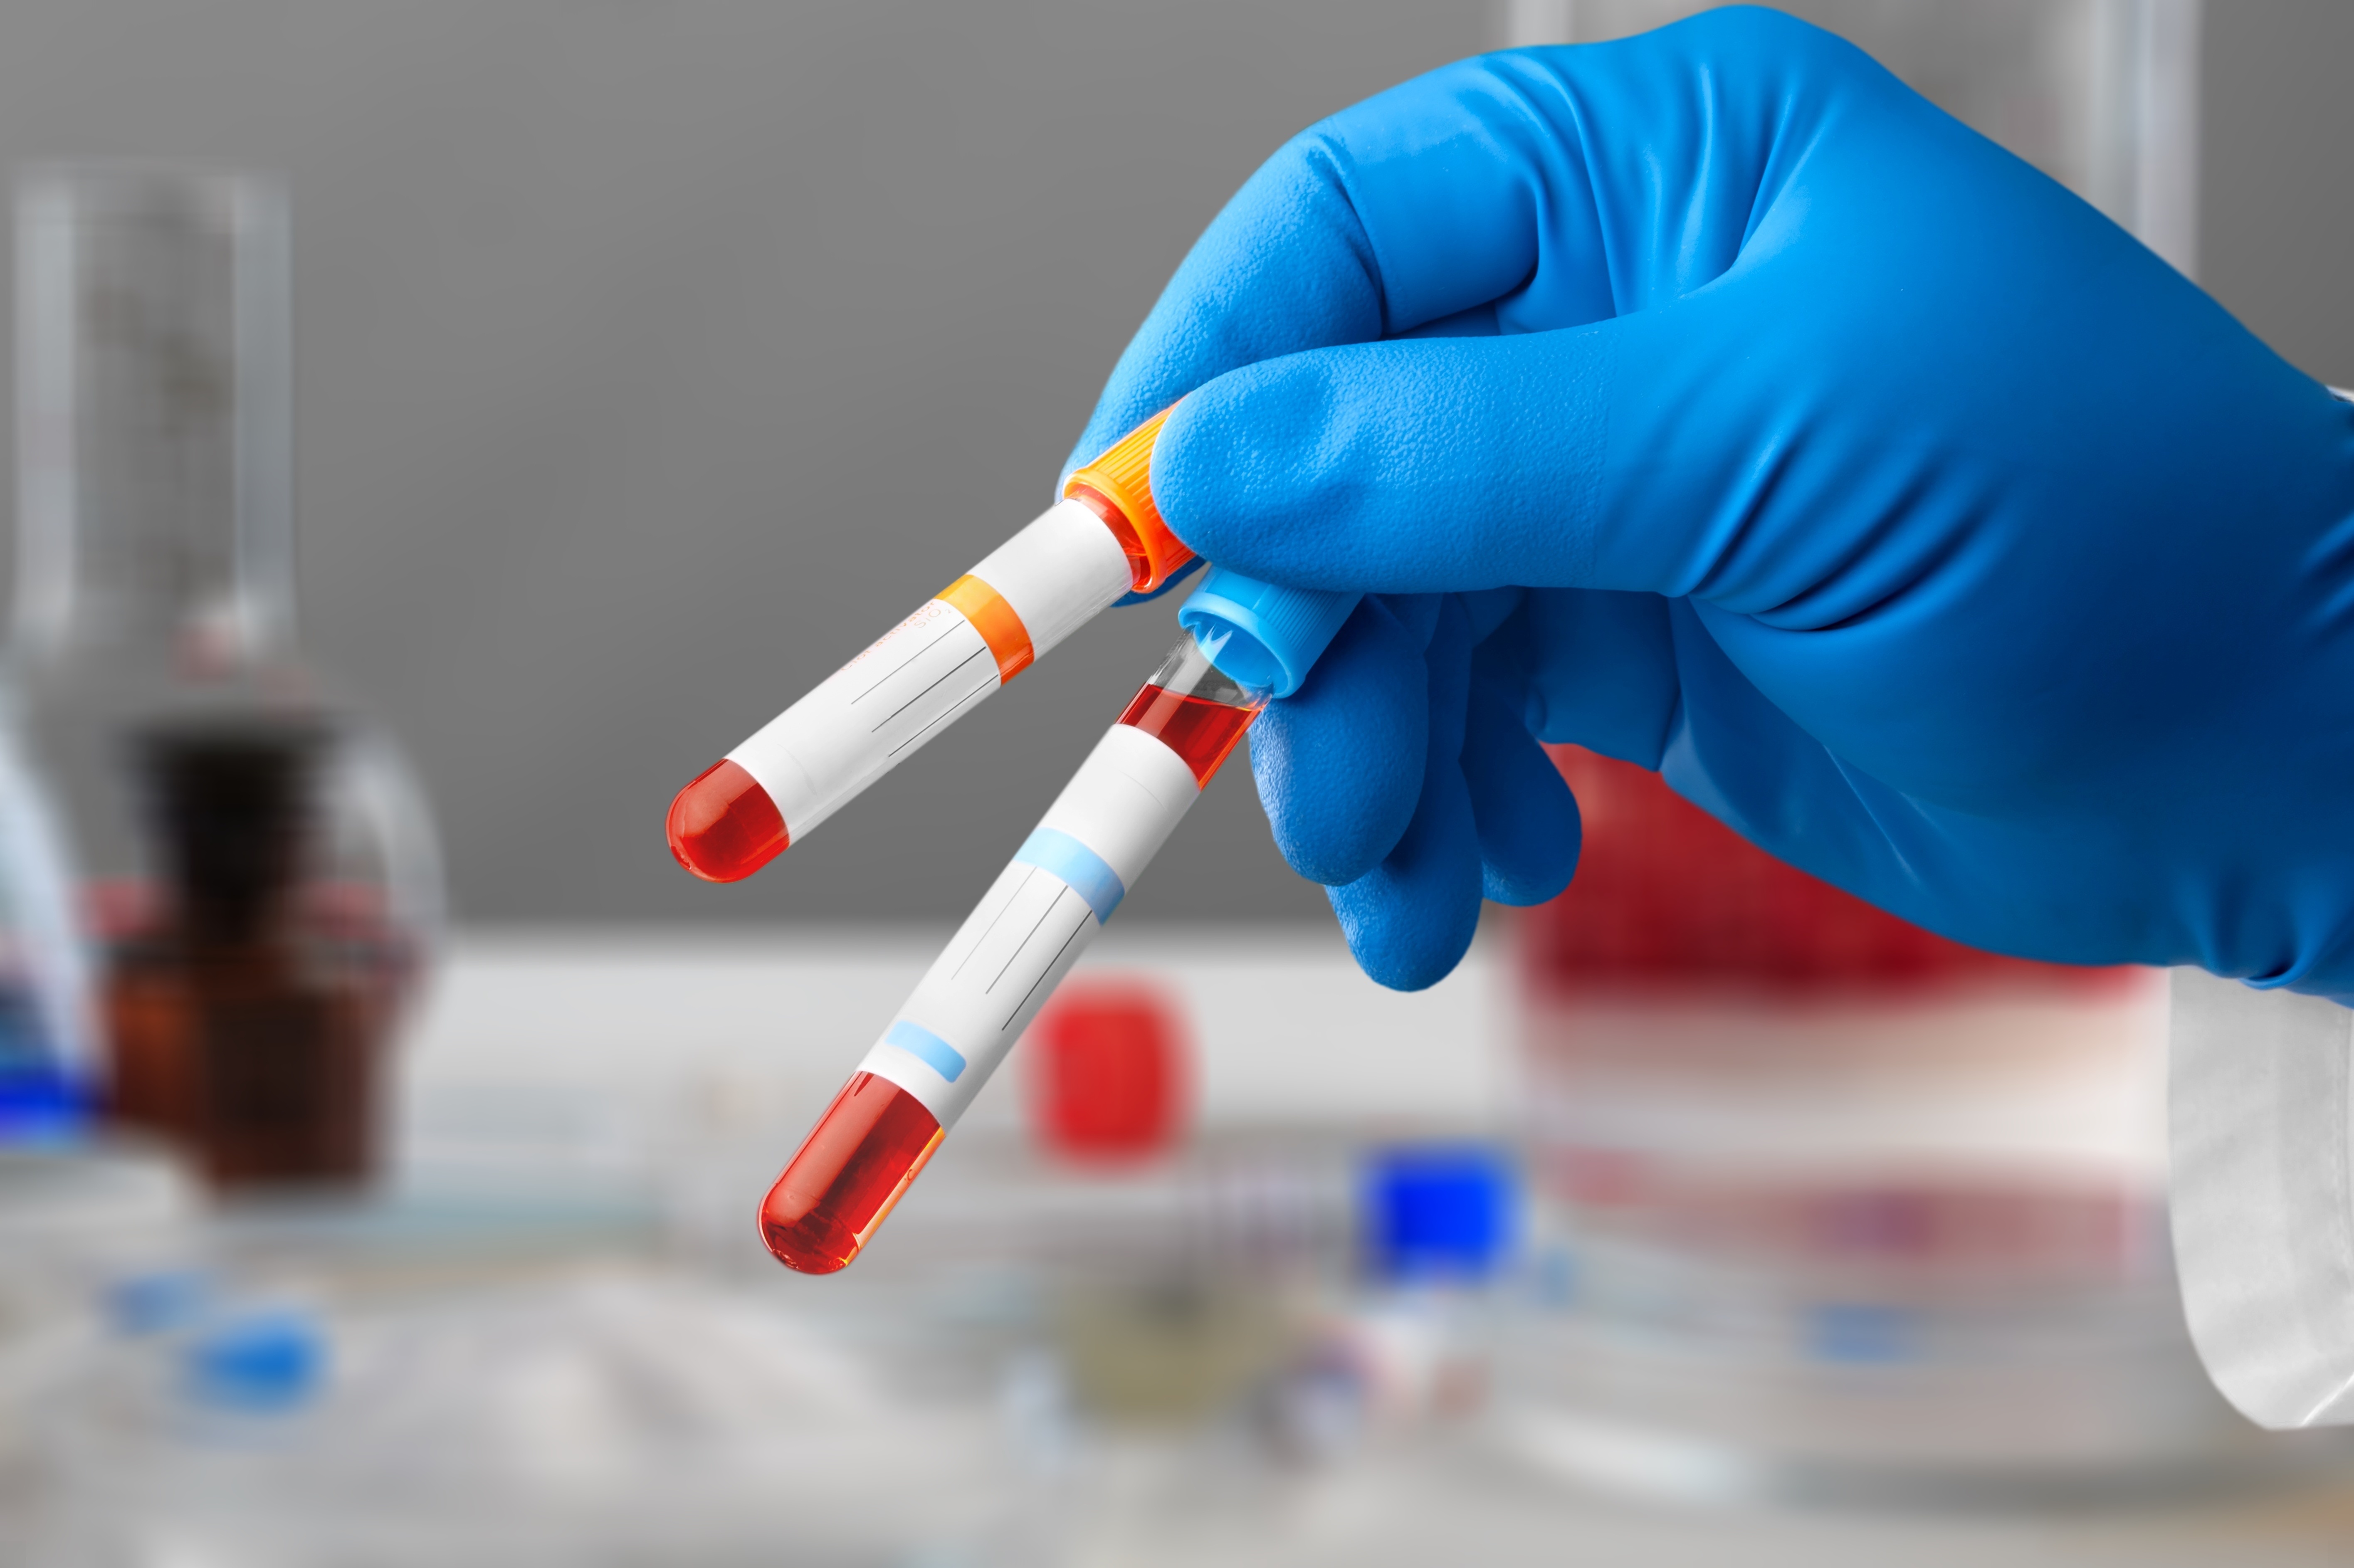 Ce nouveau test sanguin, basé sur l'analyse des modifications de l'ADN dans le sang et développé à l’Université d'Édimbourg pourrait aider à identifier le risque de diabète de type 2 …à 10 ans (Visuel Adobe Stock 515064482)